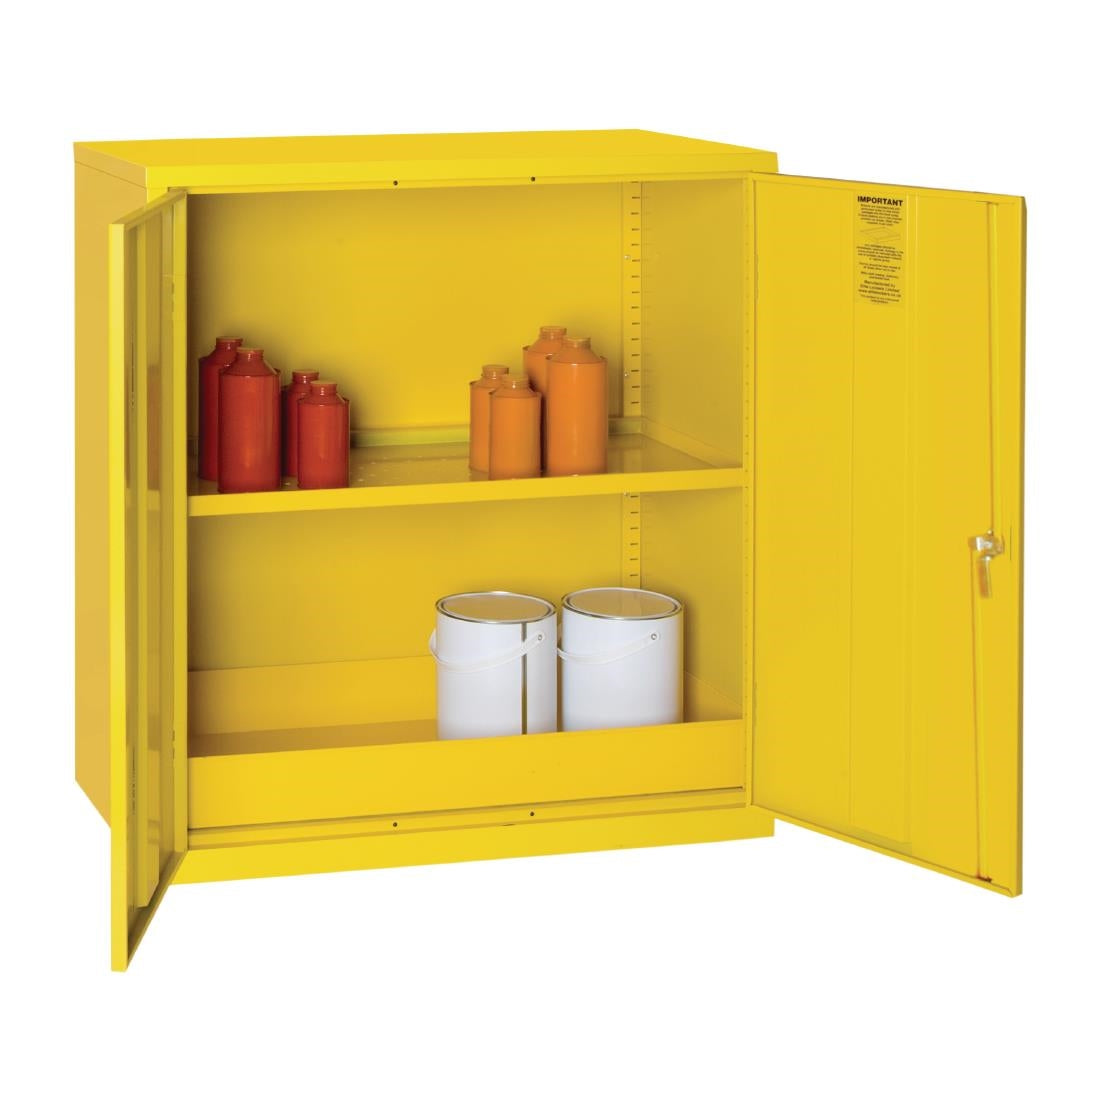 Hazardous Substance Cabinet Double Door Yellow JD Catering Equipment Solutions Ltd